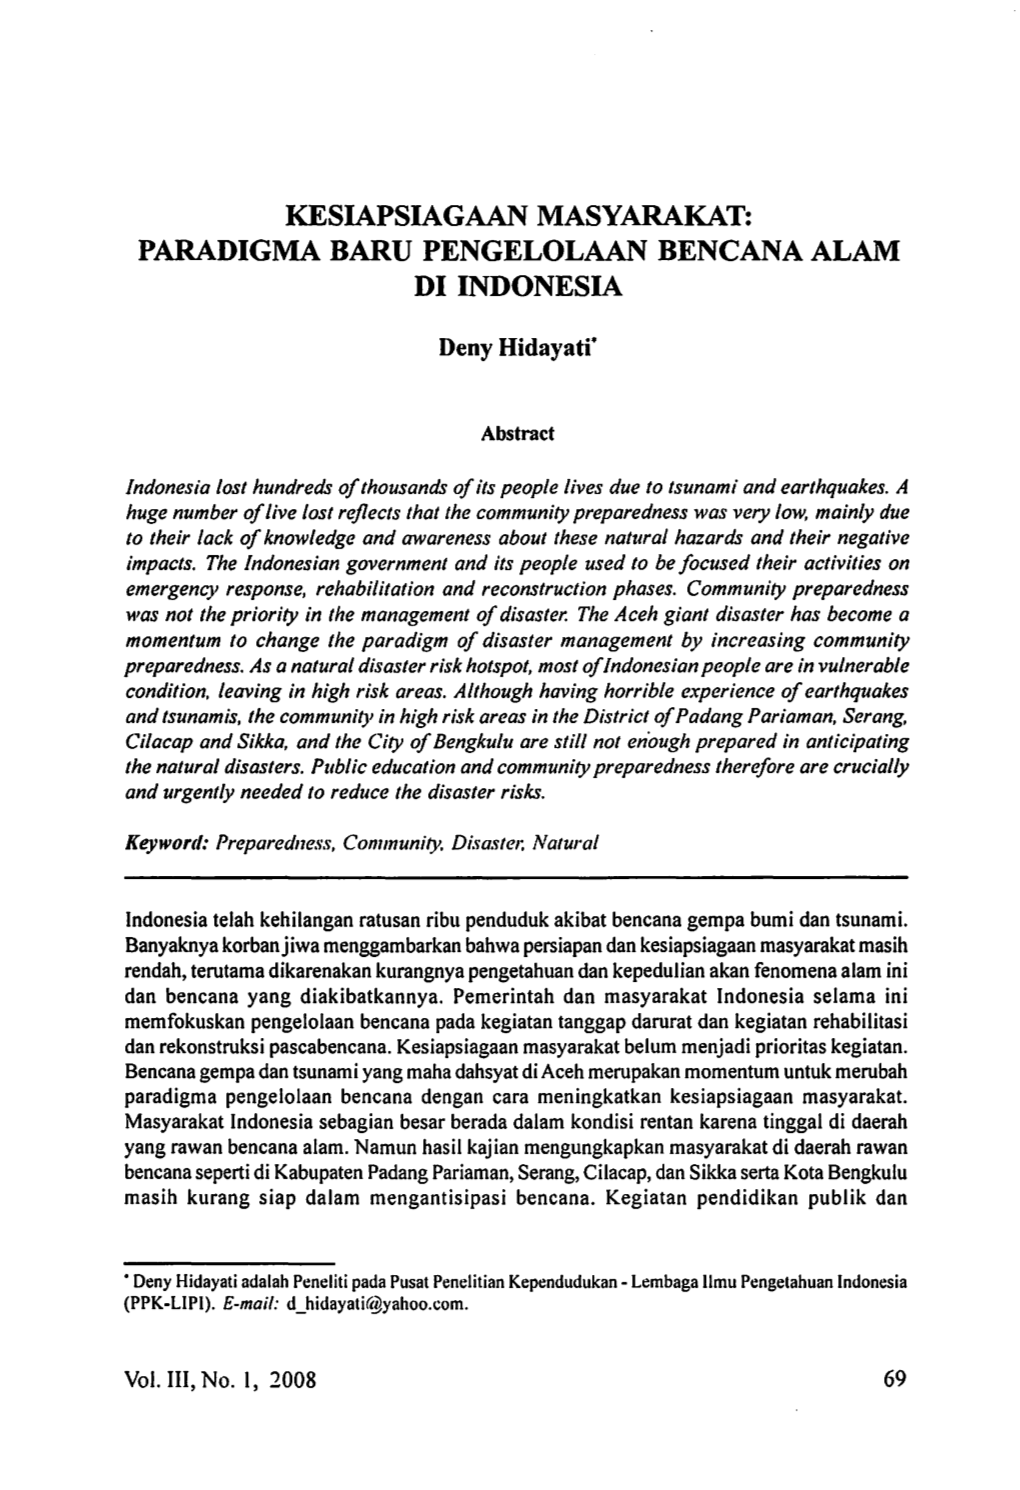 Paradigma Baru Pengelolaan Bencana Alam Di Indonesia